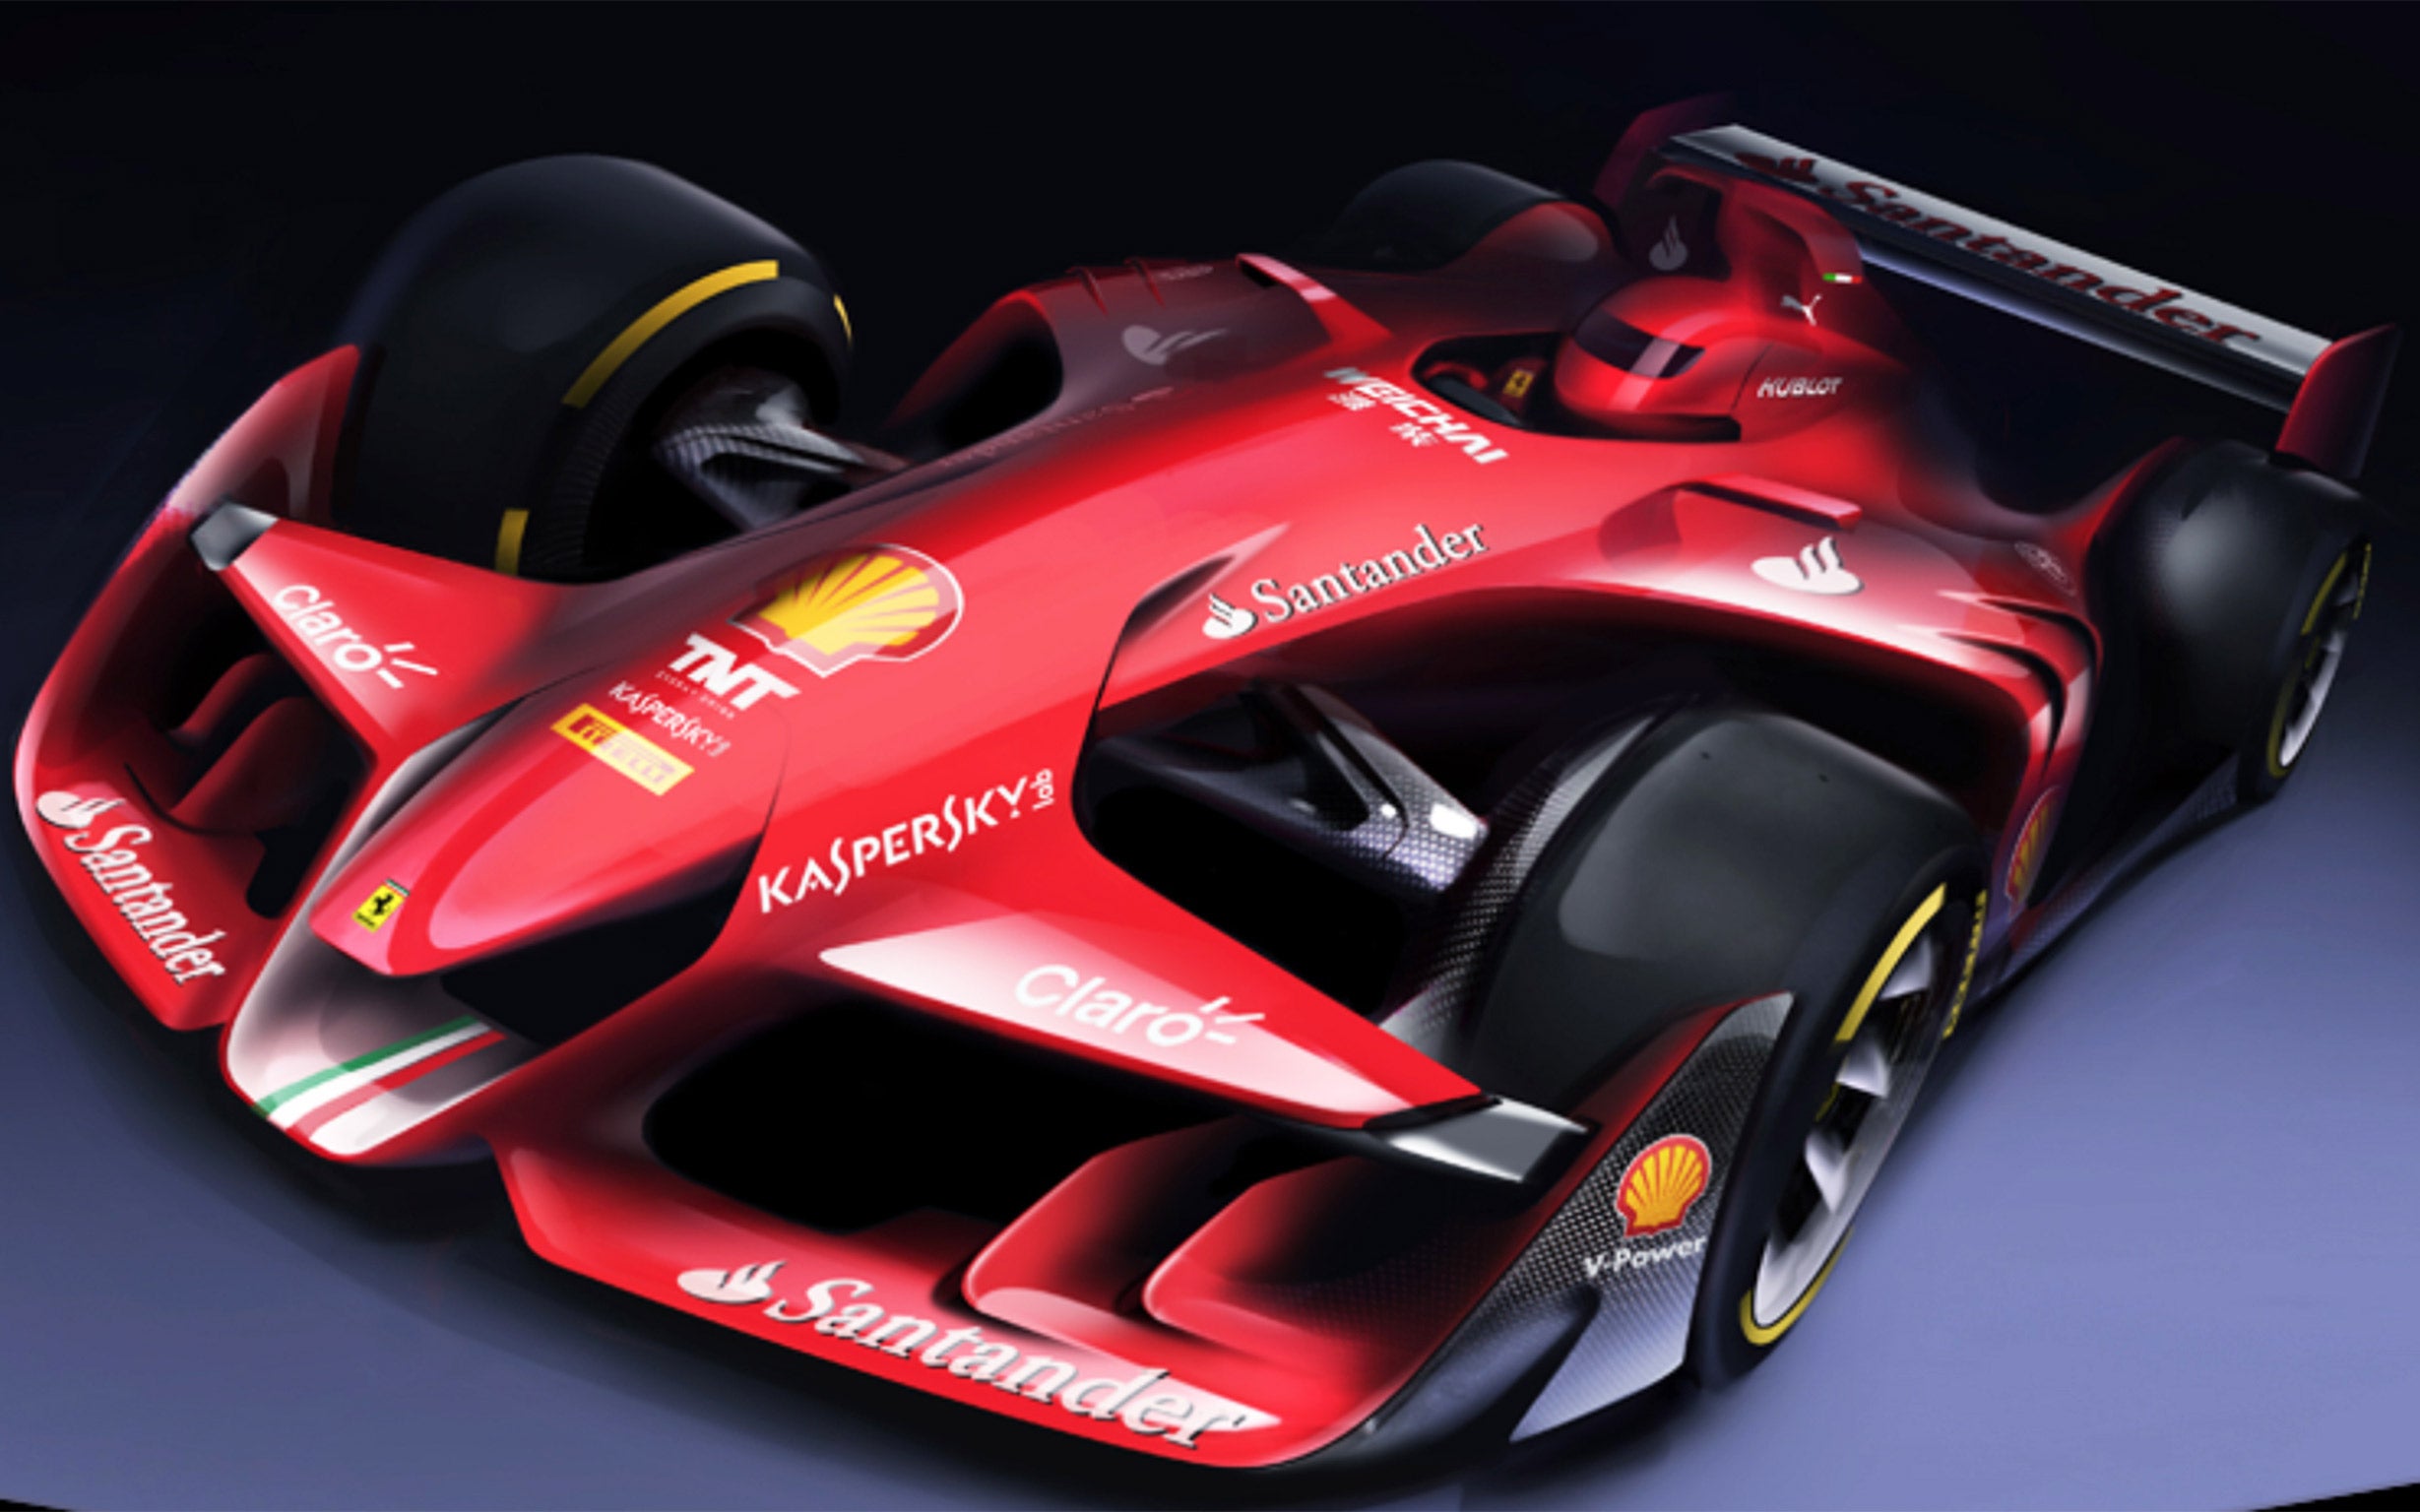 The Ferrari F1 Concept car